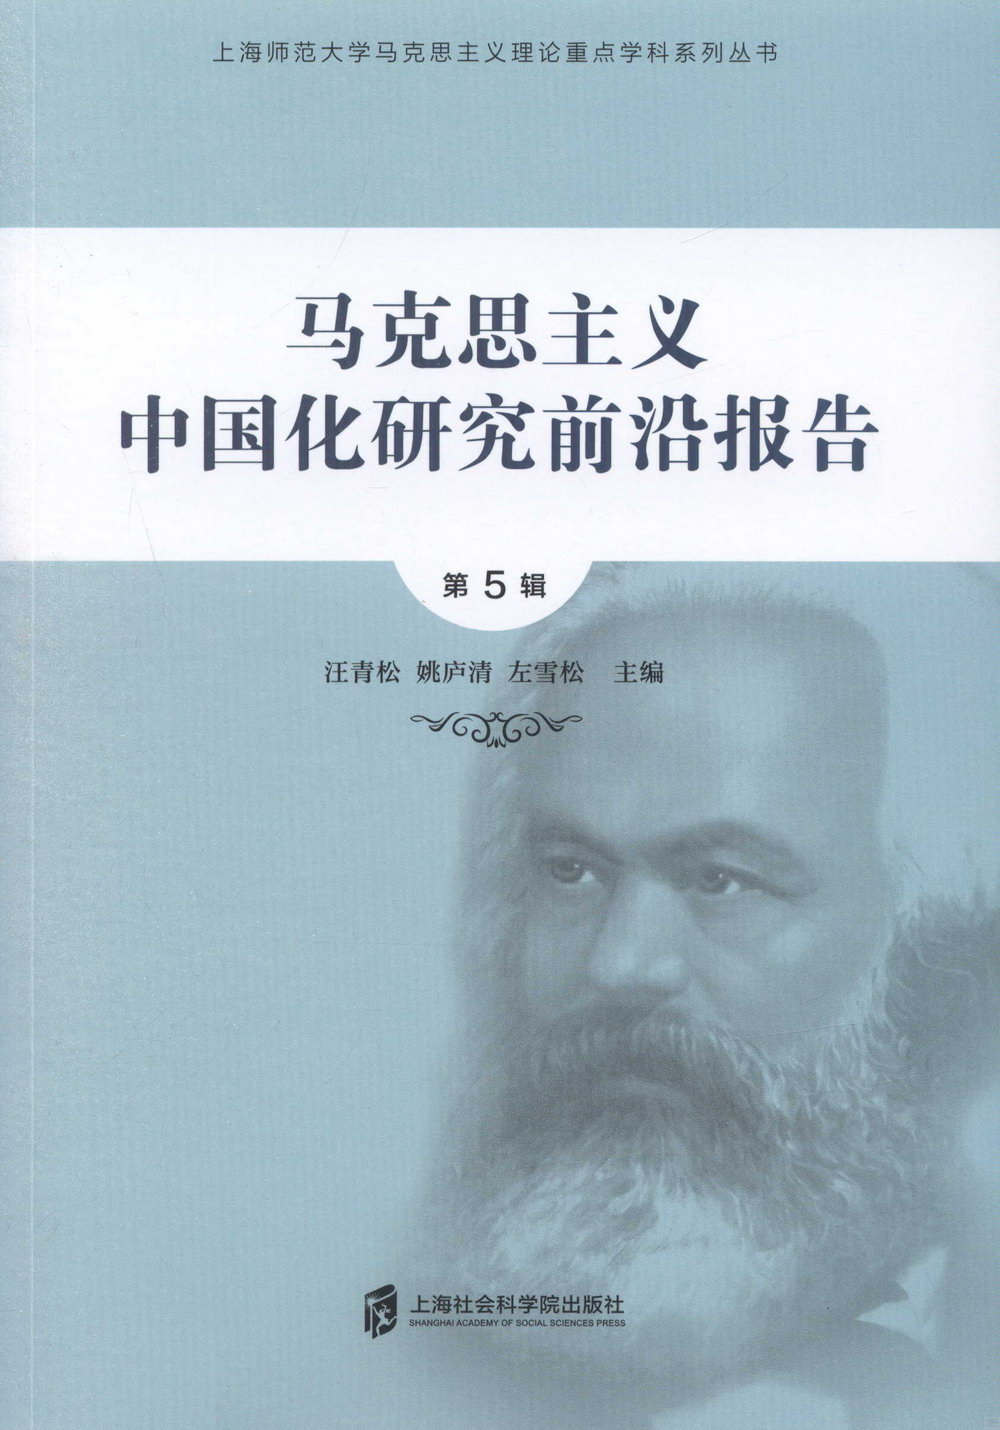 馬克思主義中國化研究前沿報告